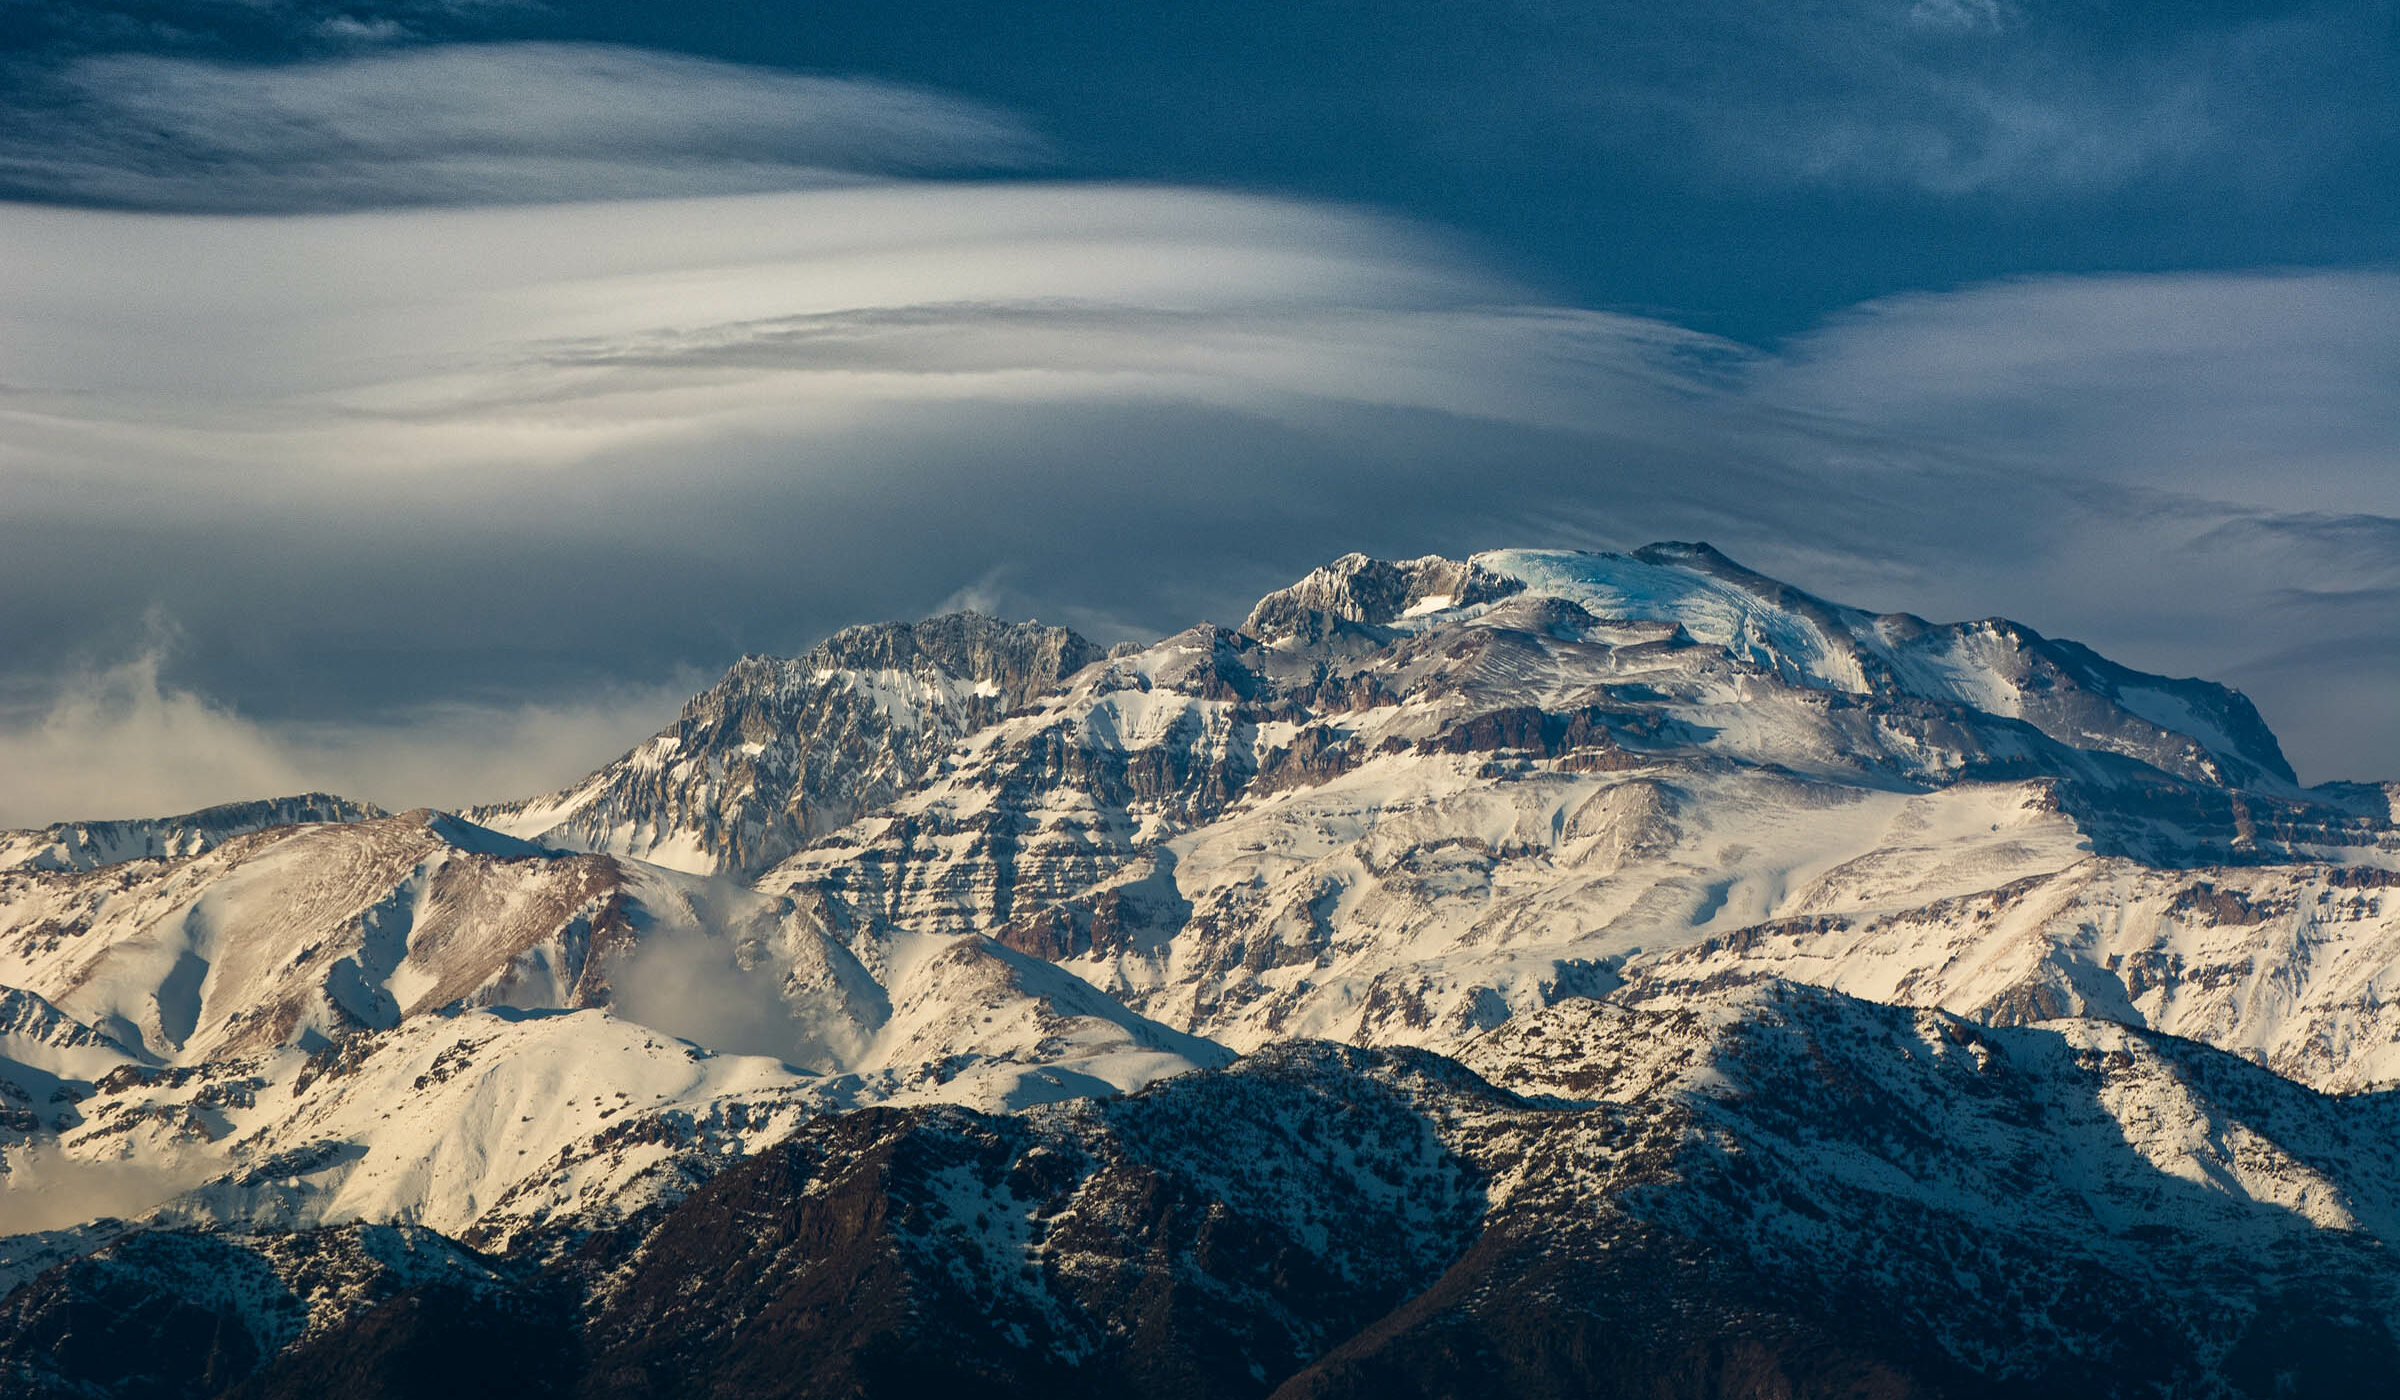 La majestuosa cordillera de Los Andes a través de la fotografía: una mirada al valle del Mapocho